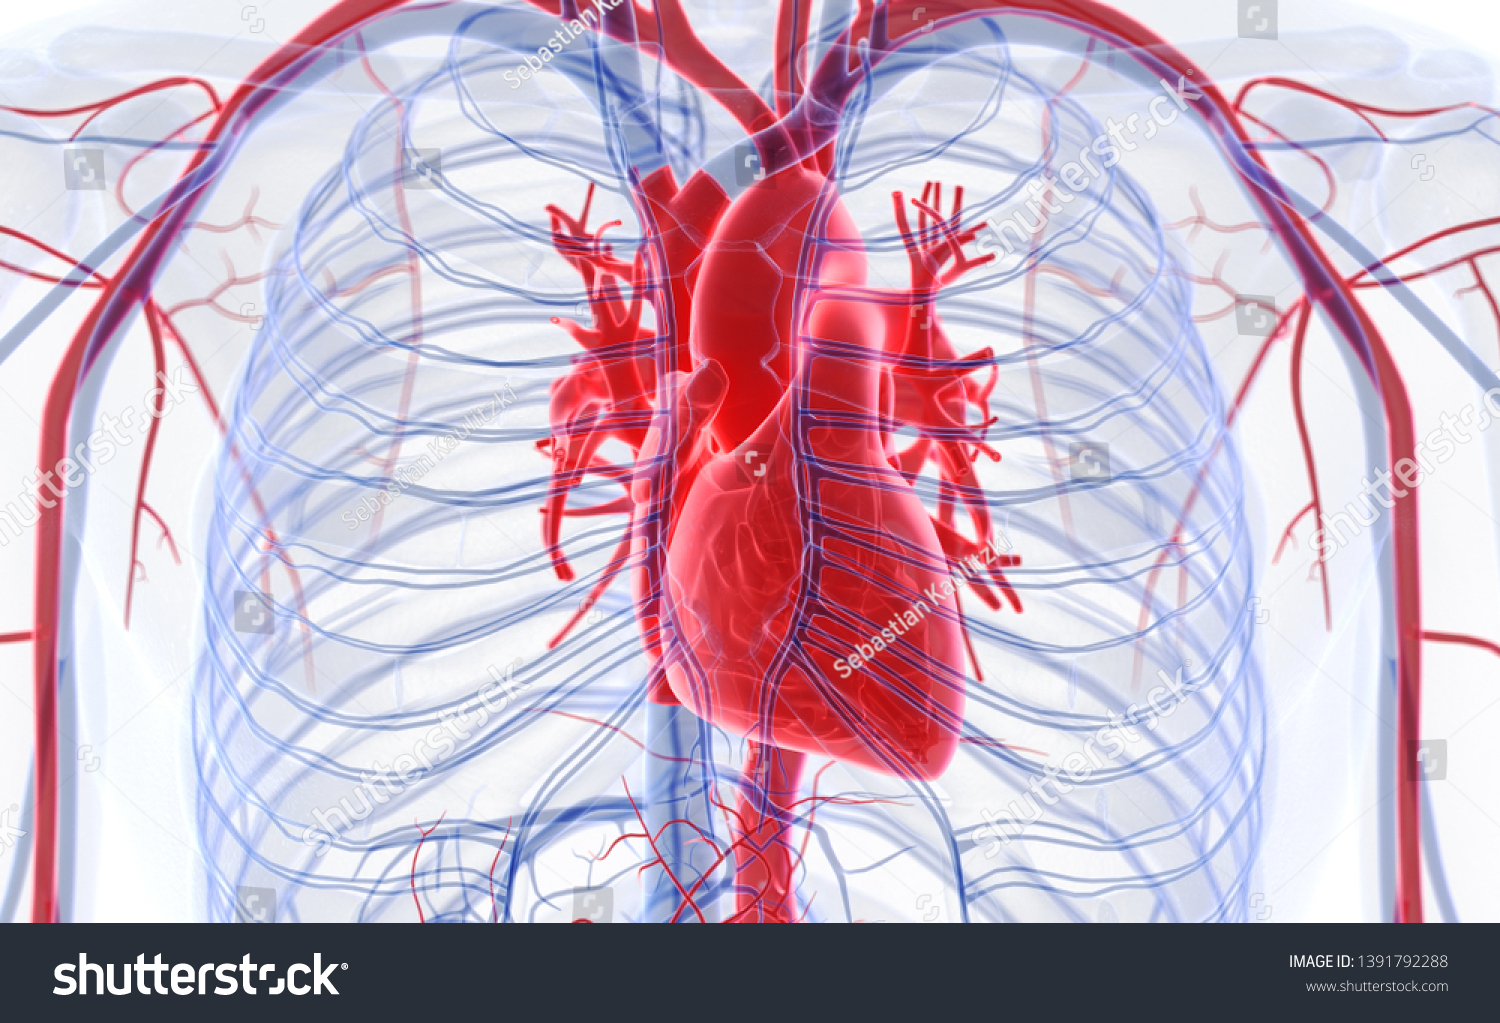 血液循環系の人間の心臓 3dイラスト のイラスト素材 Shutterstock